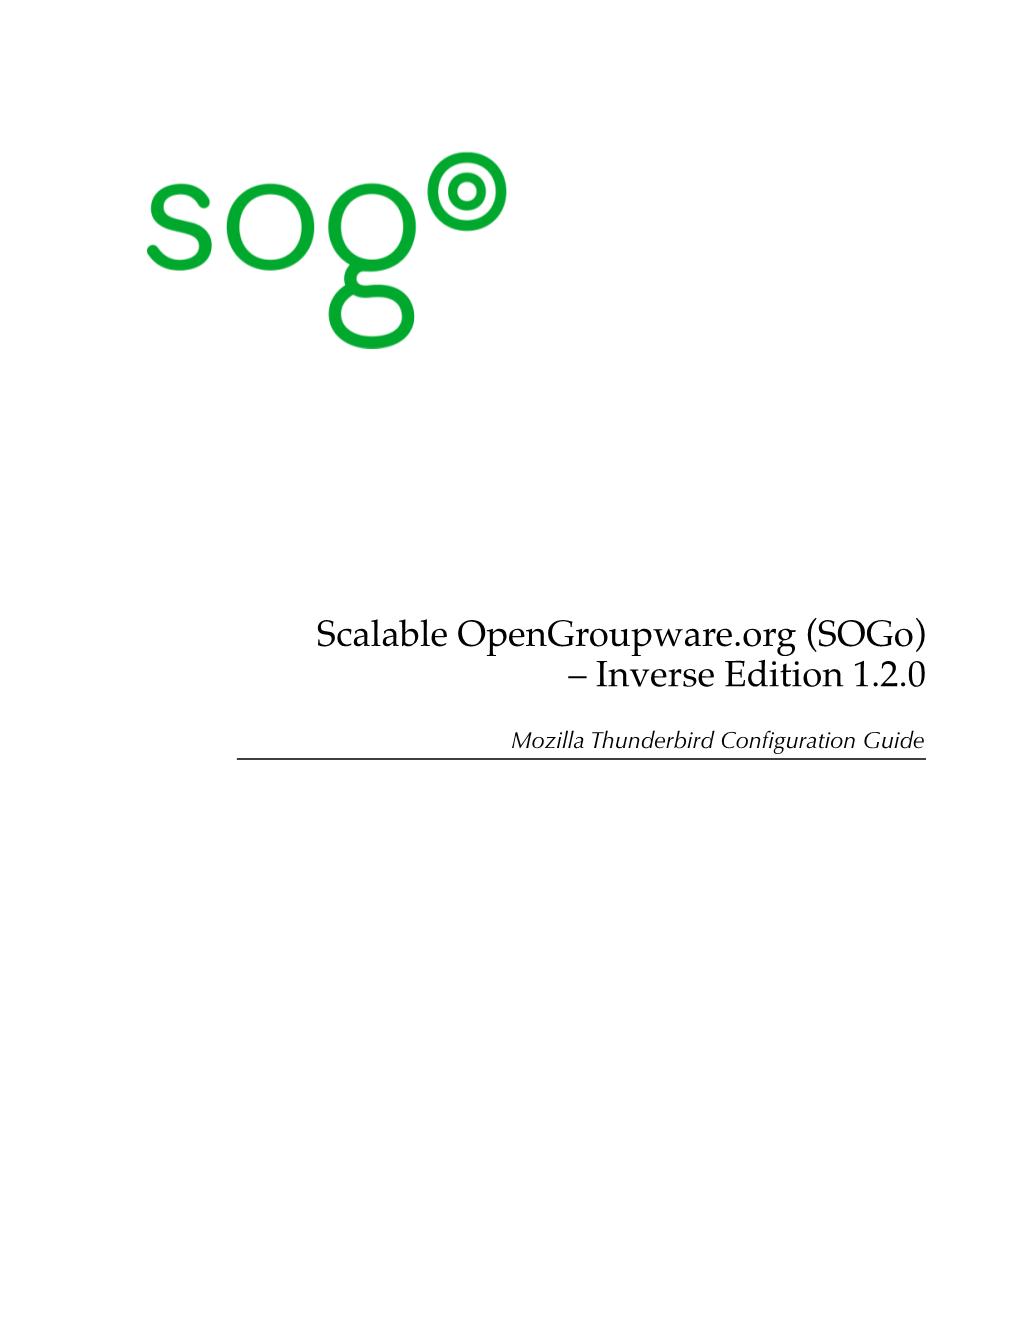 Sogo) – Inverse Edition 1.2.0